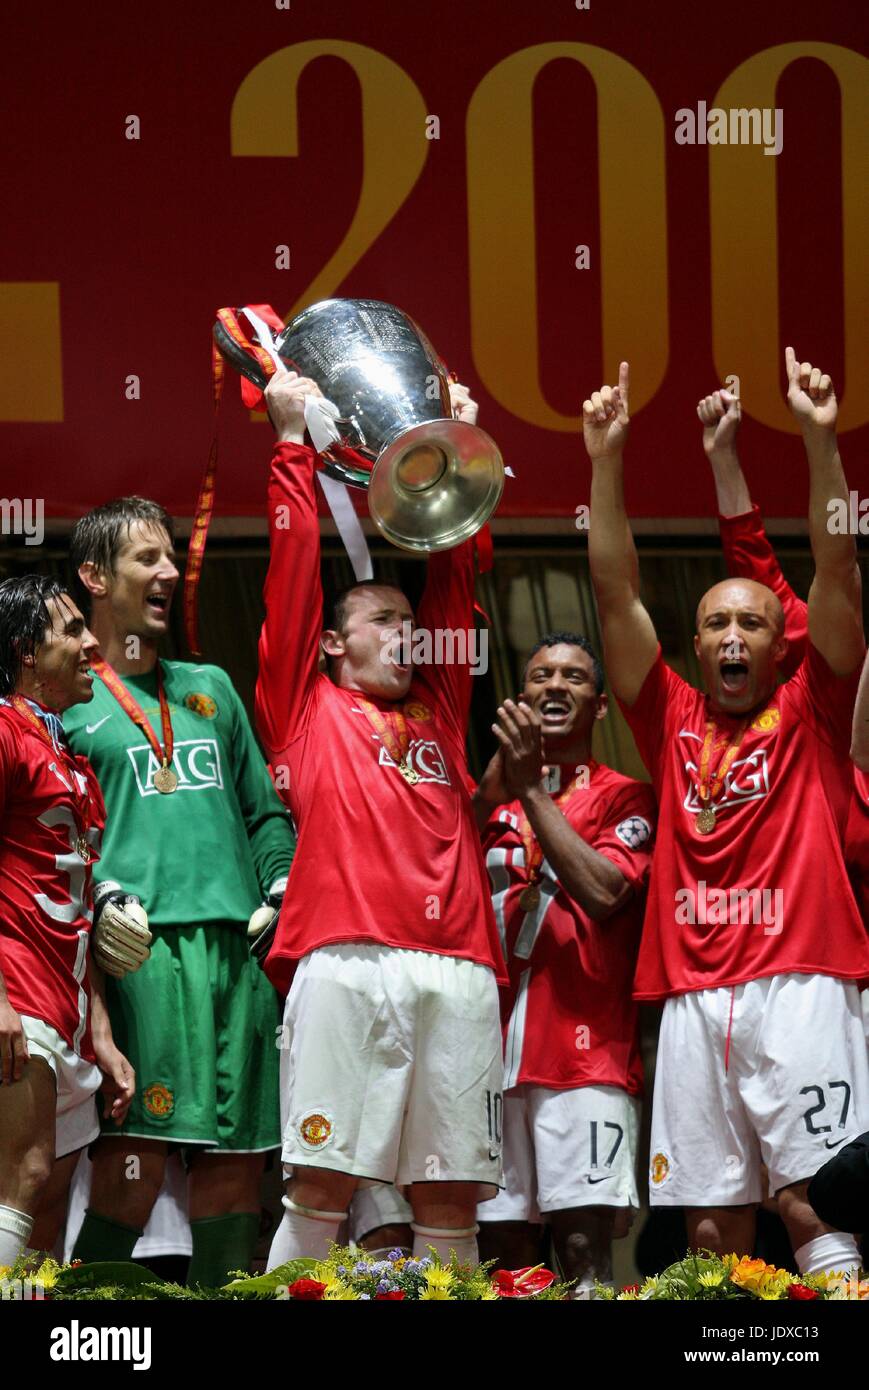 WAYNE ROONEY levanta la Copa de Europa, el MANCHESTER UNITED V CHELSEA, LA FINAL DE LA CHAMPIONS LEAGUE 2008, 2008 Foto de stock